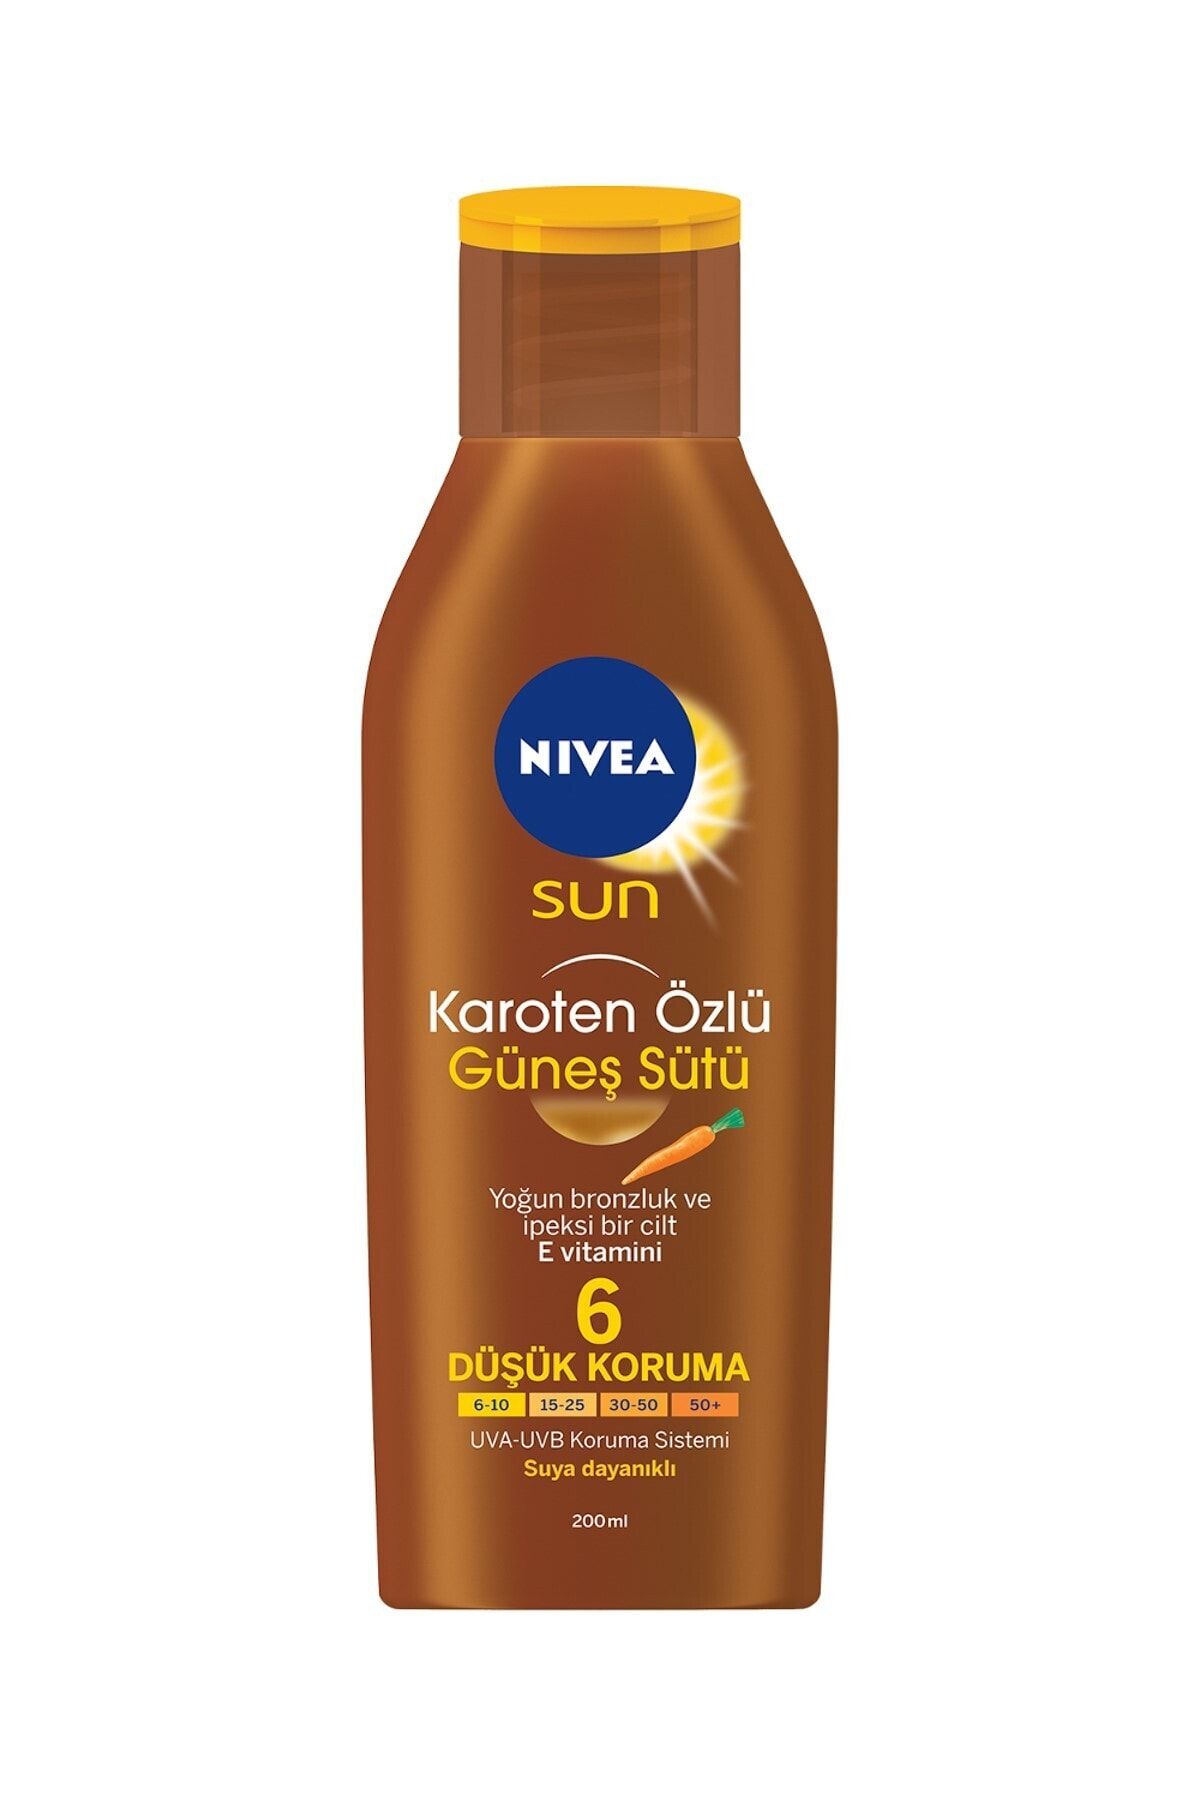 NIVEA Sun Karoten Özlü Güneş Sütü 200 ml - Pasif